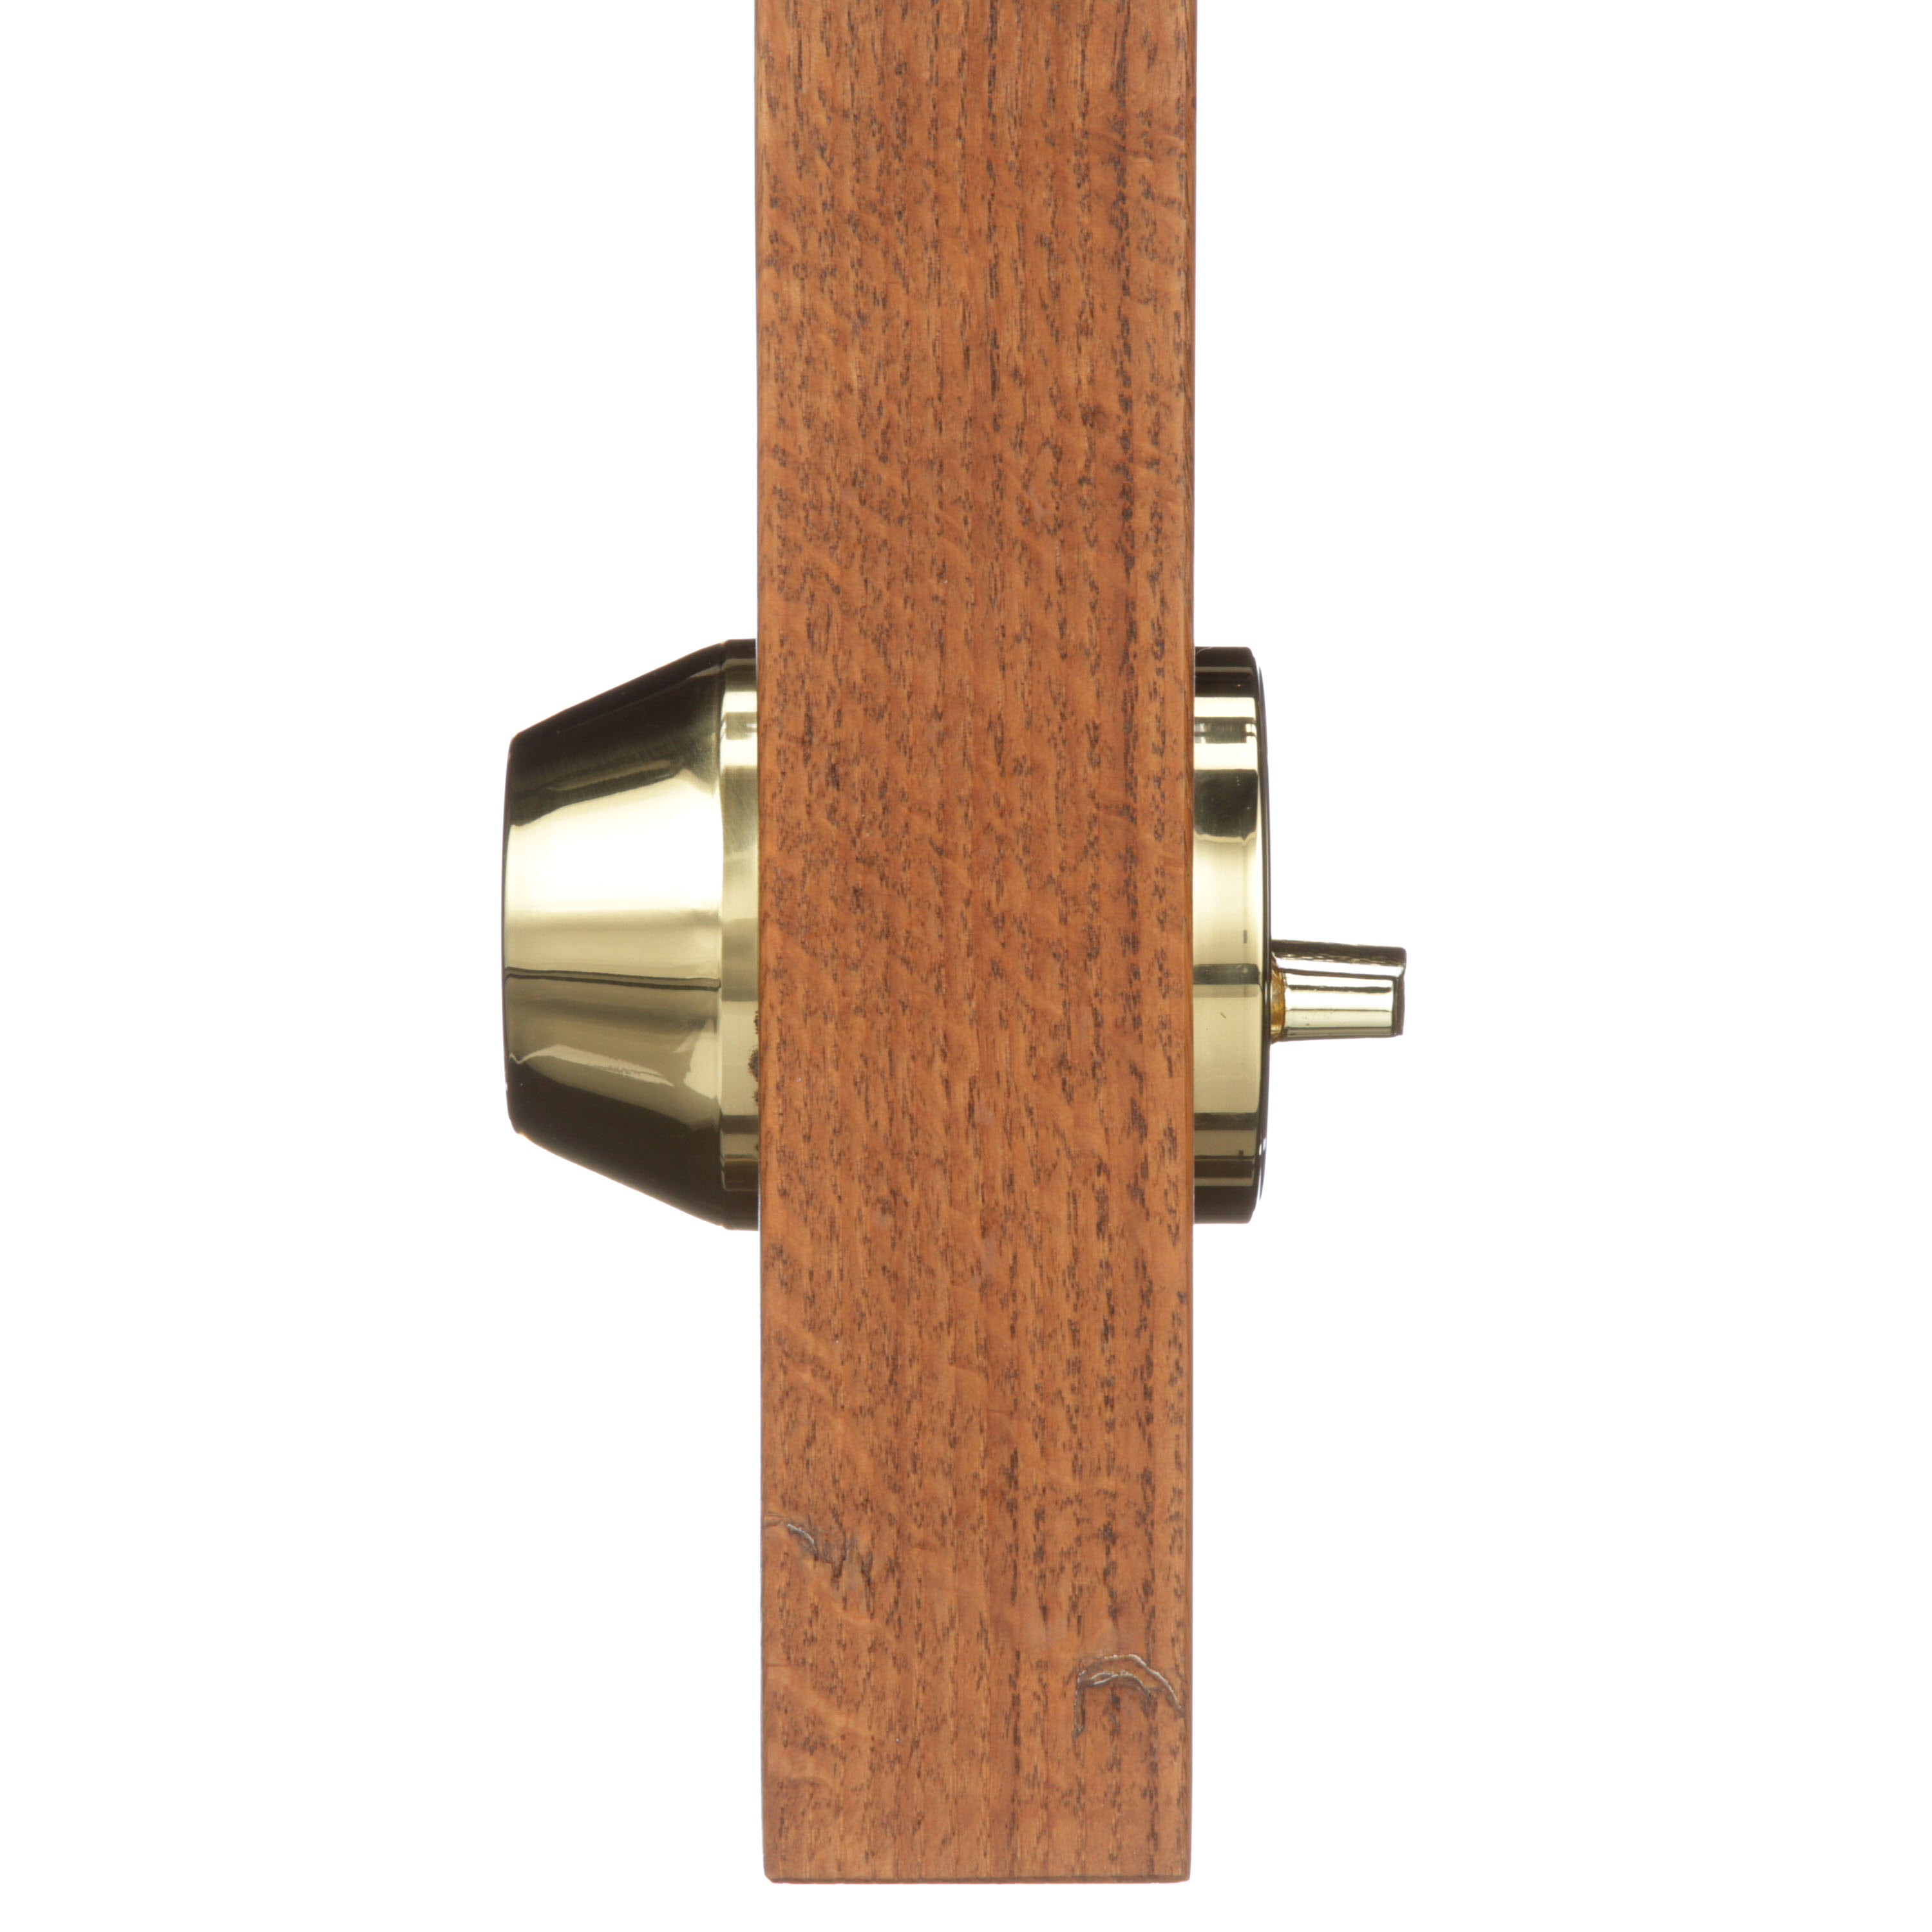 Brinks, Keyed Entry Mobile Home Single Cylinder Deadbolt, Polished Brass Finish - image 4 of 9